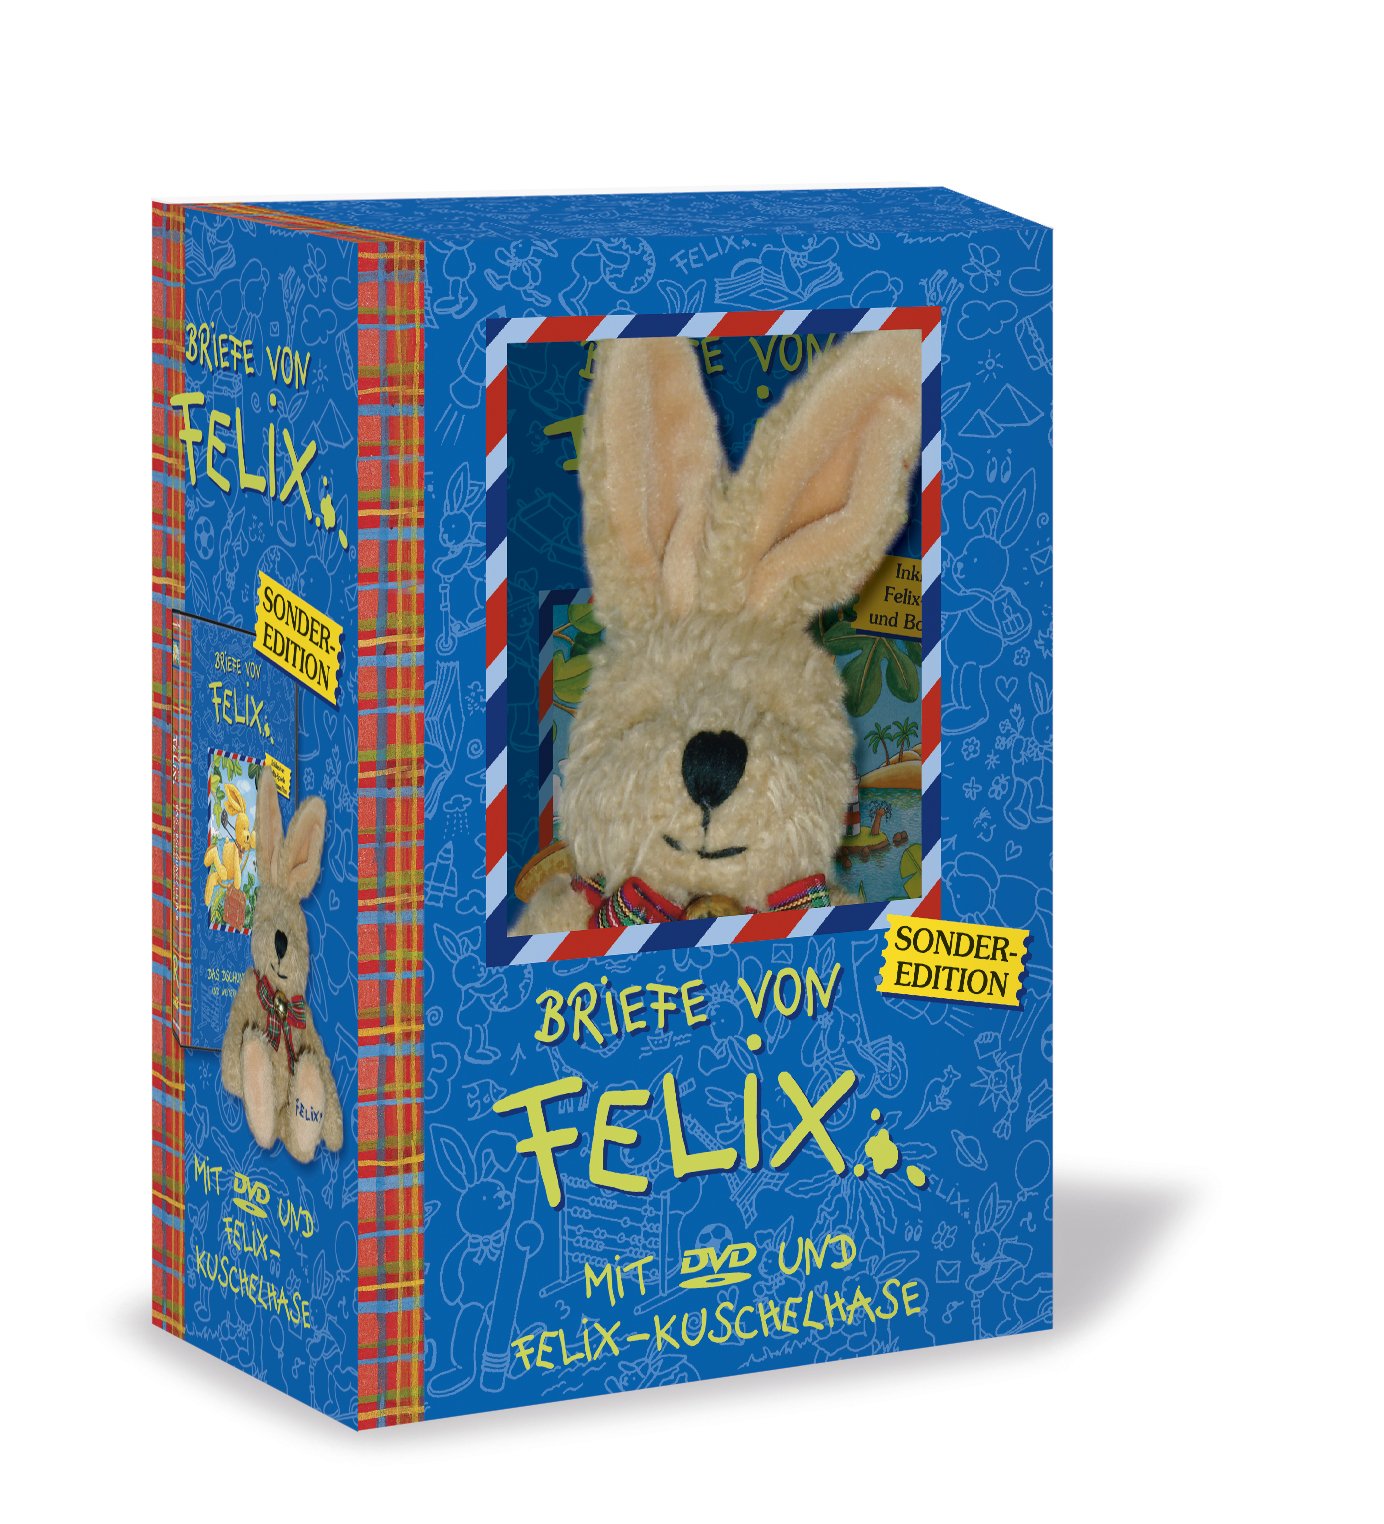 Briefe von Felix - Geschenk-Edition (mit DVD Nr. 6 und Original Felix-Kuschelhasen)